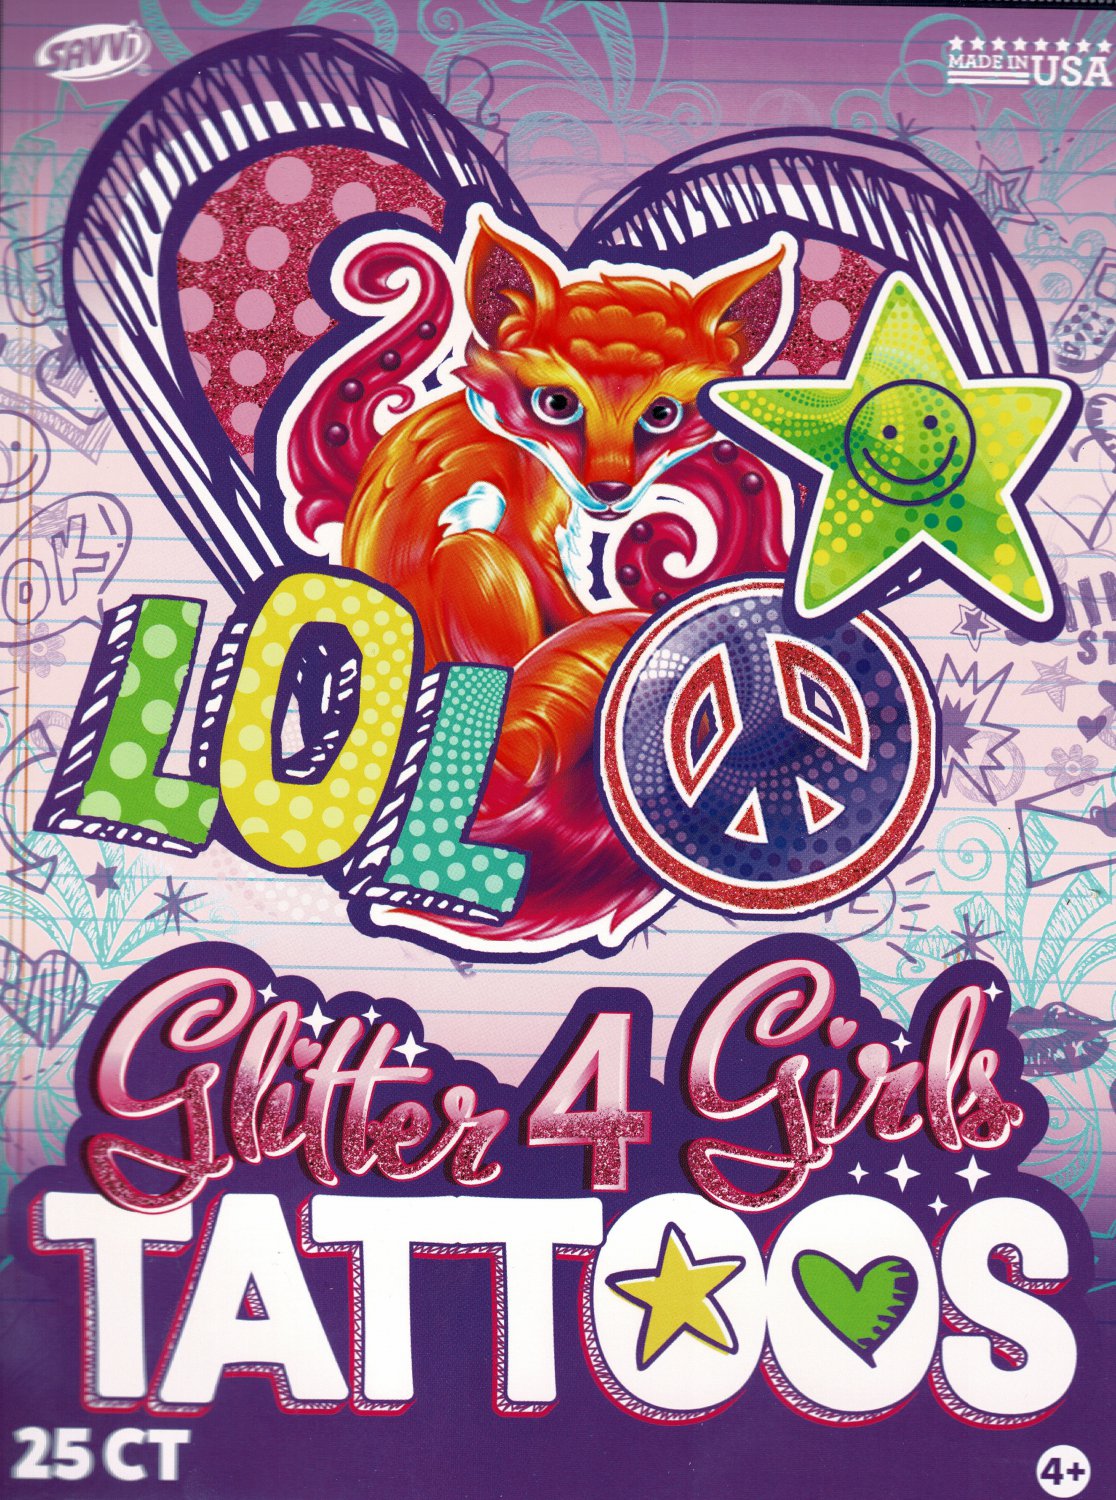 Savvi - L.O.L. Glitter 4 Girls Tattoos - 25 Tattoos